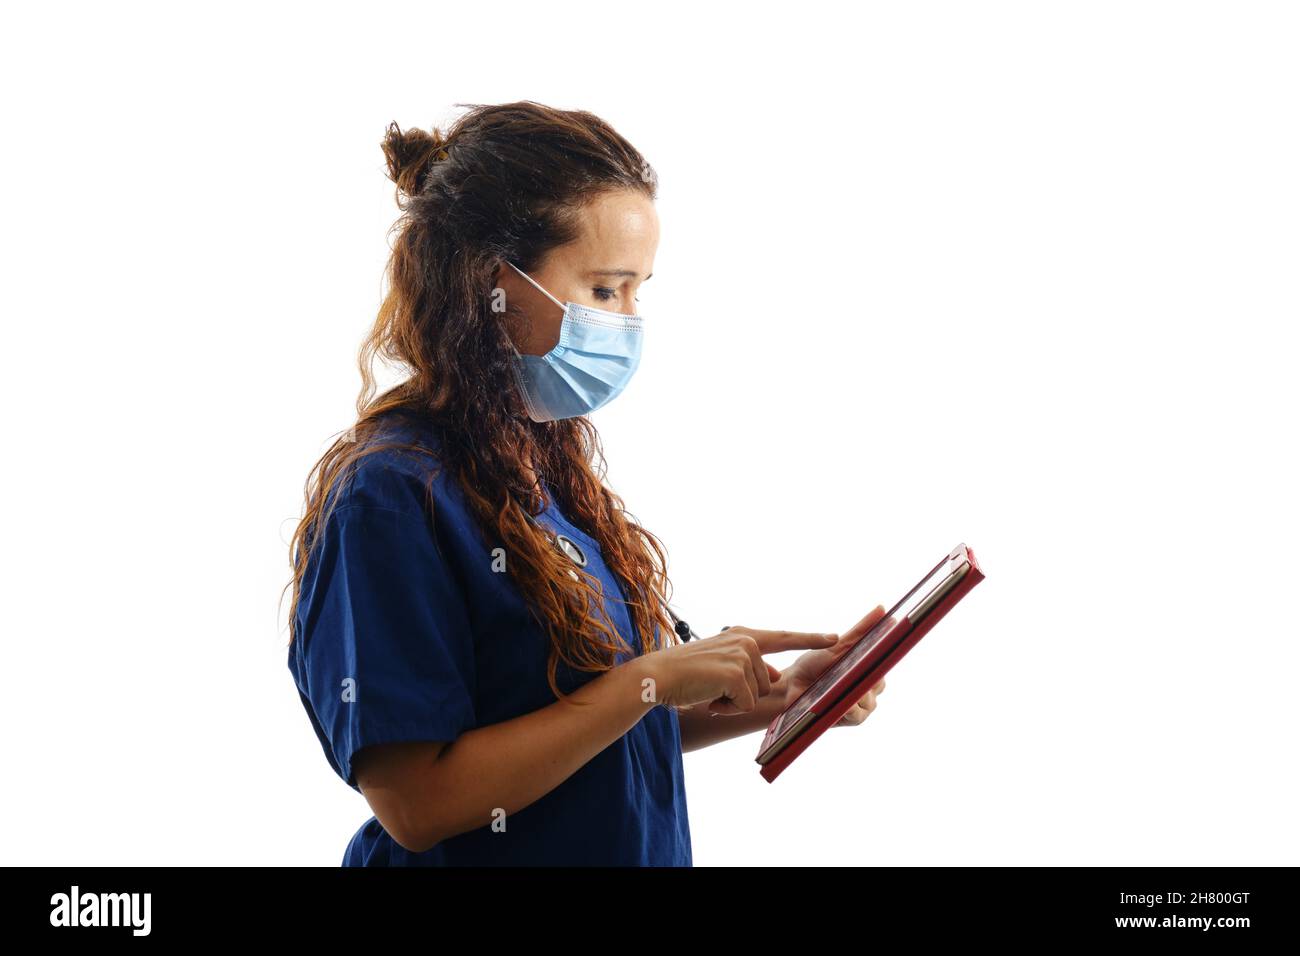 Ärztin in einer Gesichtsmaske und OP-Uniform mit einer digitalen Tablette, während sie auf einem isolierten Hintergrund steht. Stockfoto